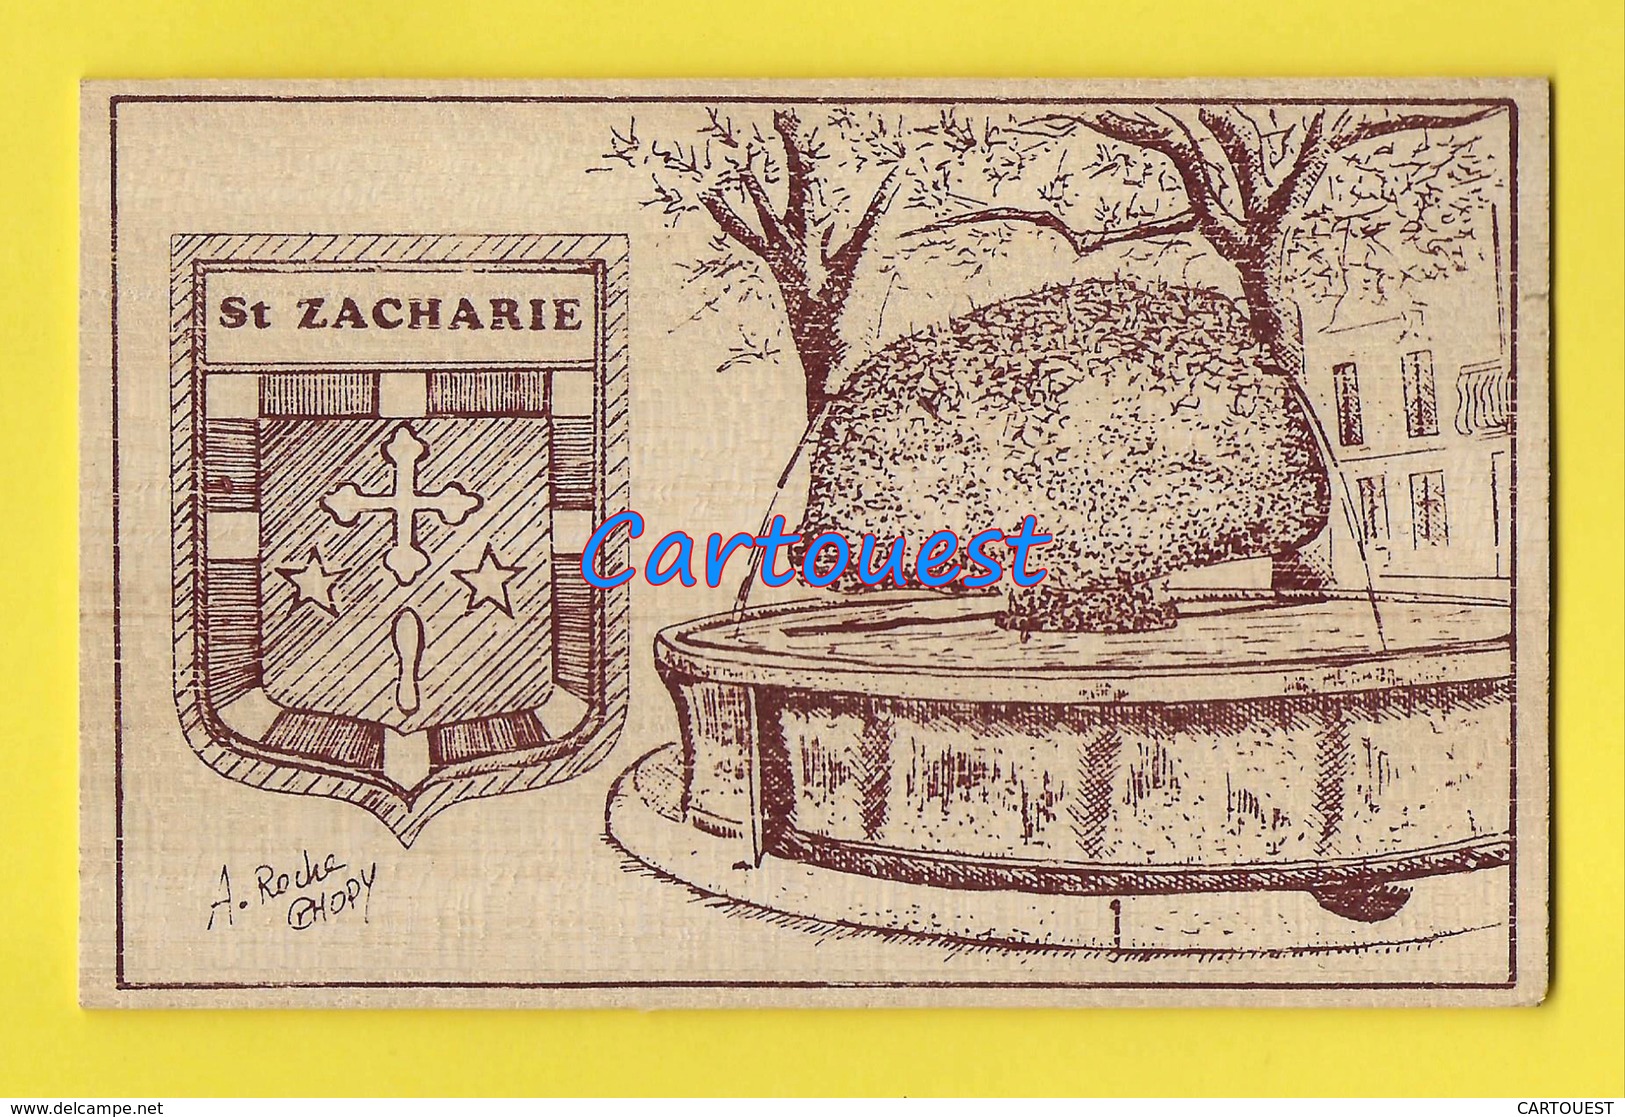 SAINT- ZACHARIE  83  Gravure Sur Bois - A ROCHE CHOPY - FONTAINE - CARTE En BOIS - Saint-Zacharie